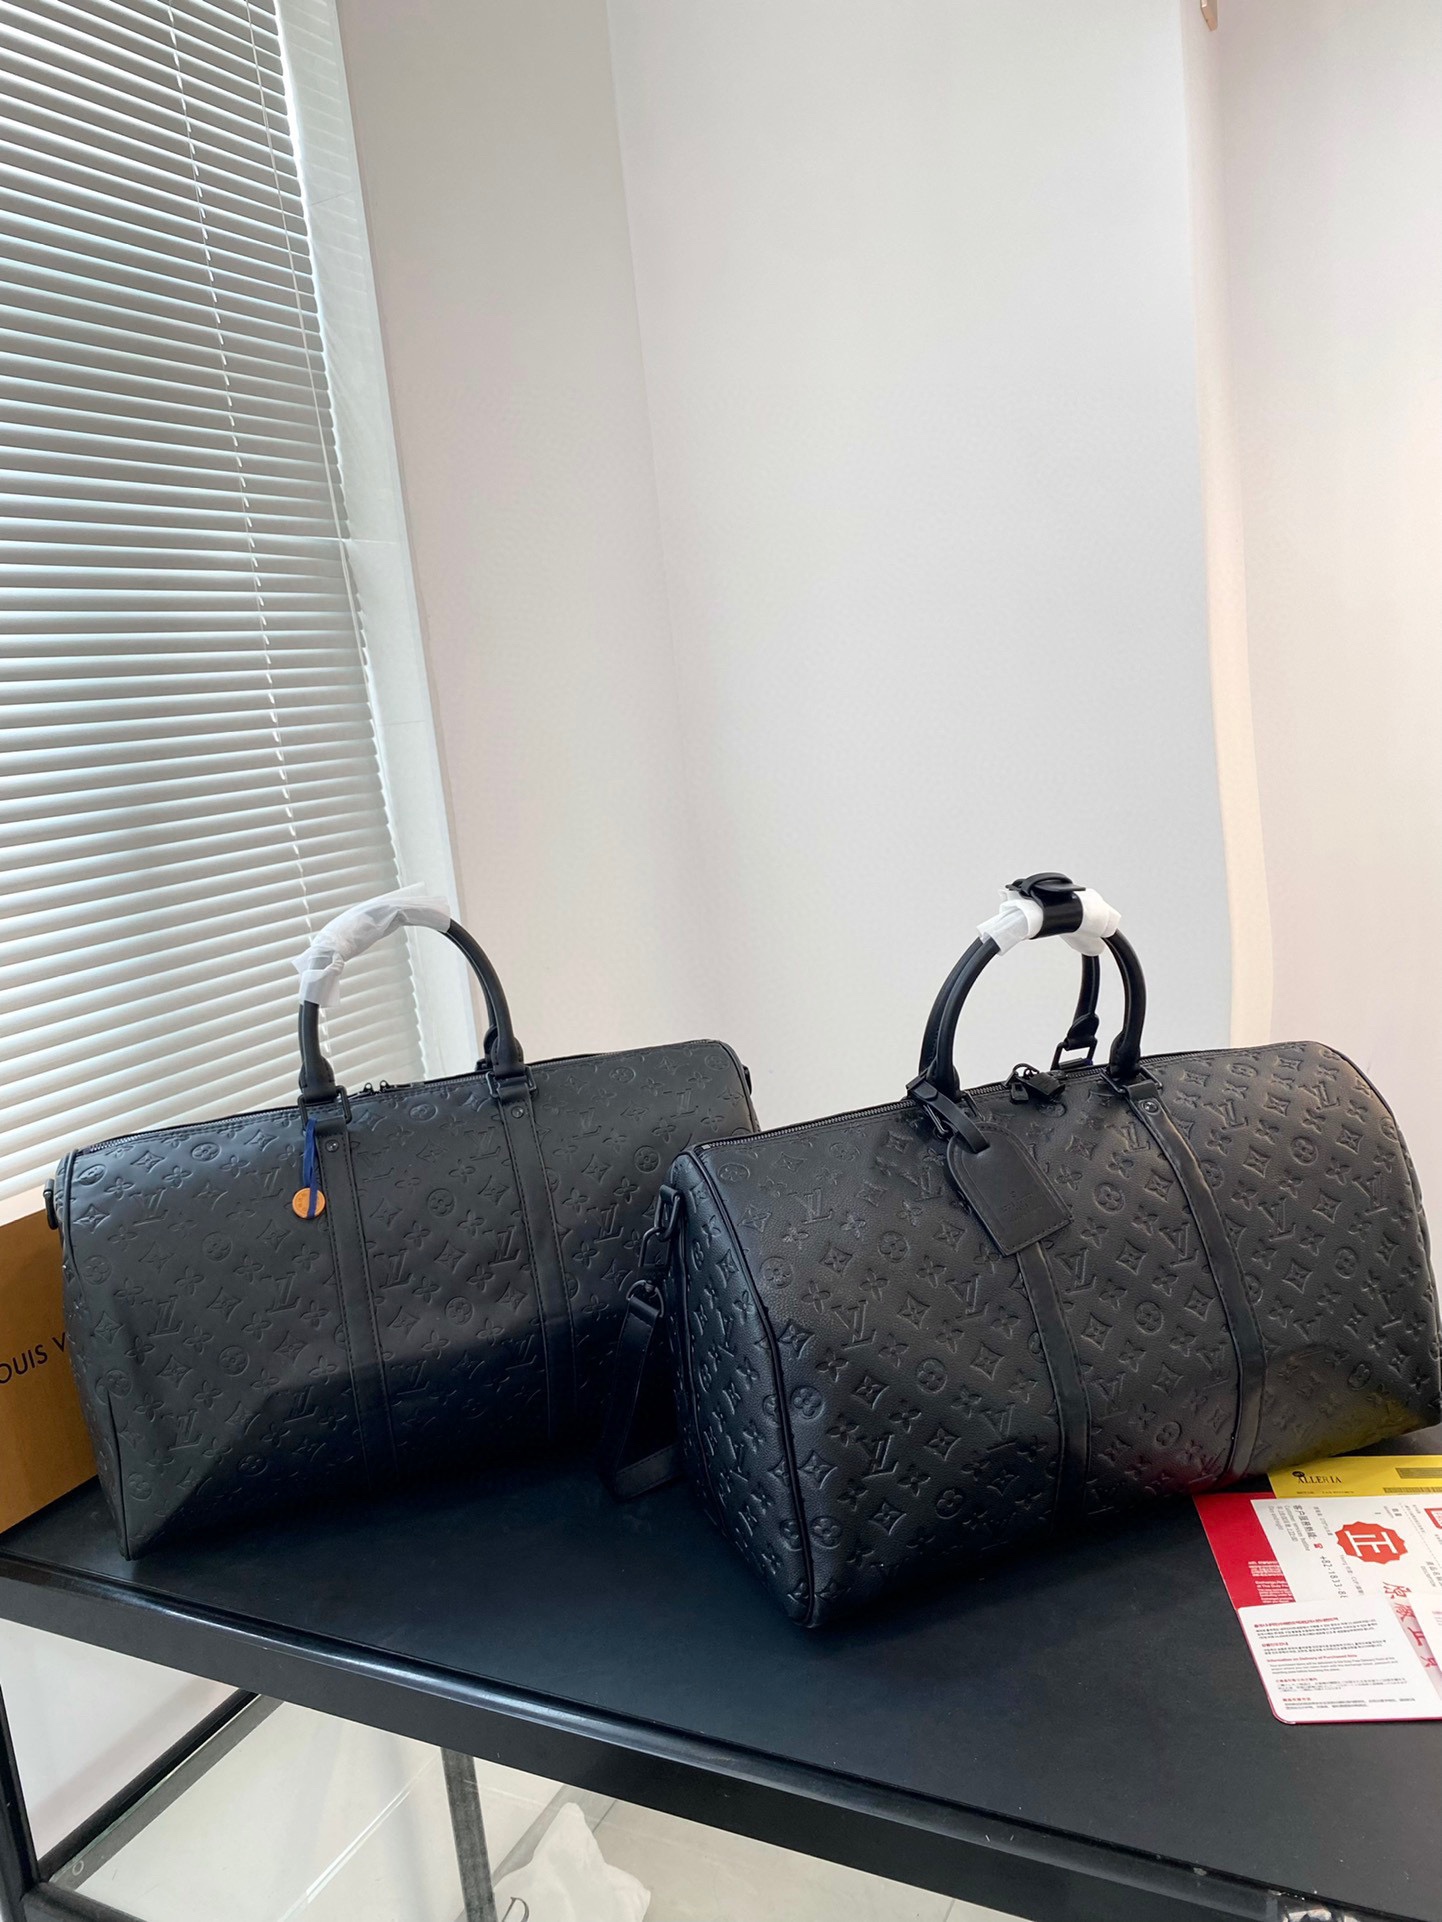 Knockoff höchste Qualität
 Louis Vuitton Taschen Reisetaschen Unisex Fashion